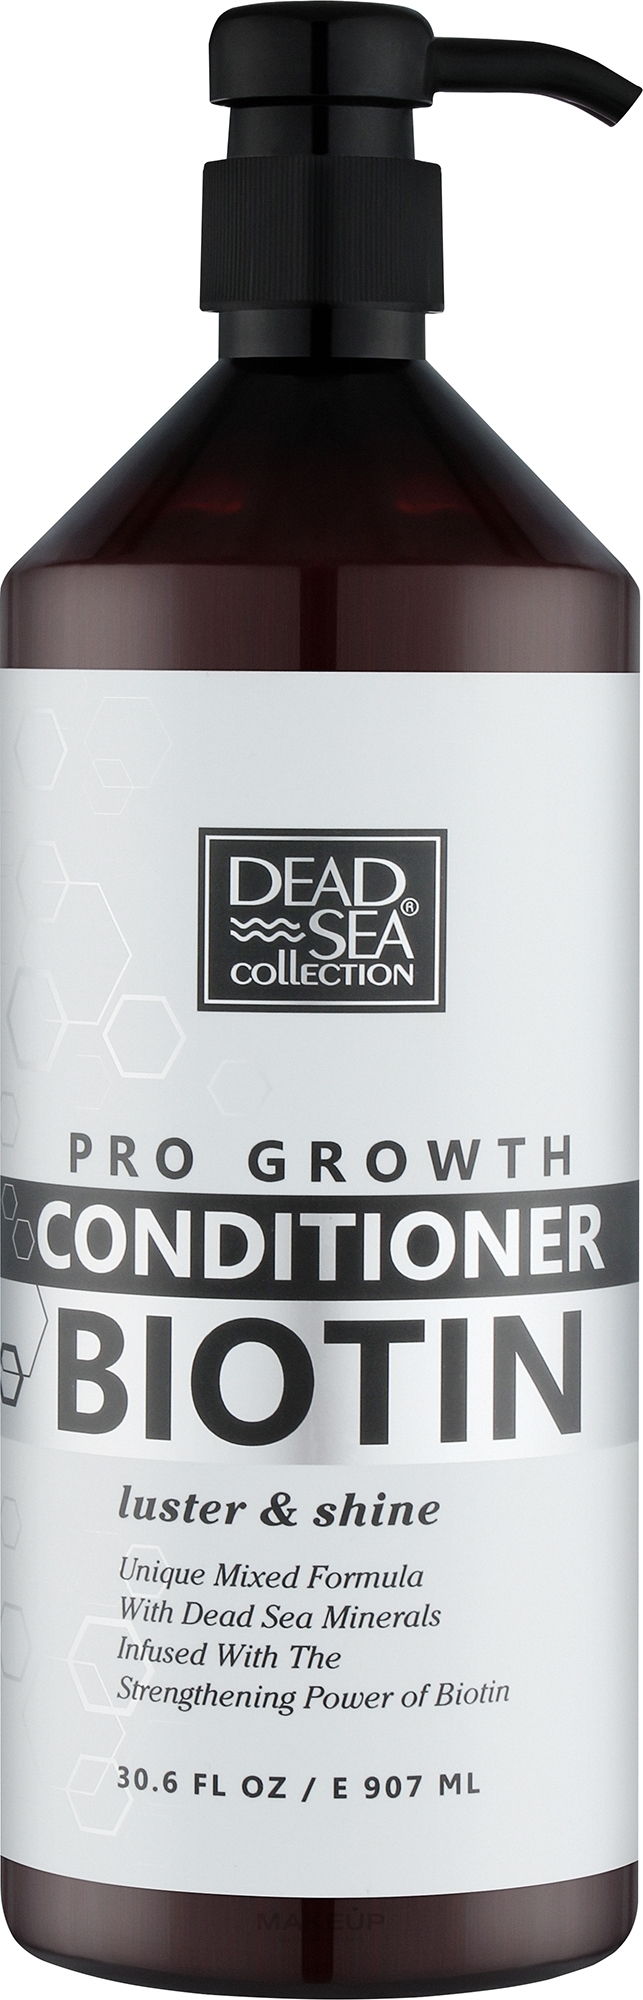 Кондиционер для волос с биотином и минералами Мертвого моря - Dead Sea Collection Biotin Conditioner — фото 907ml